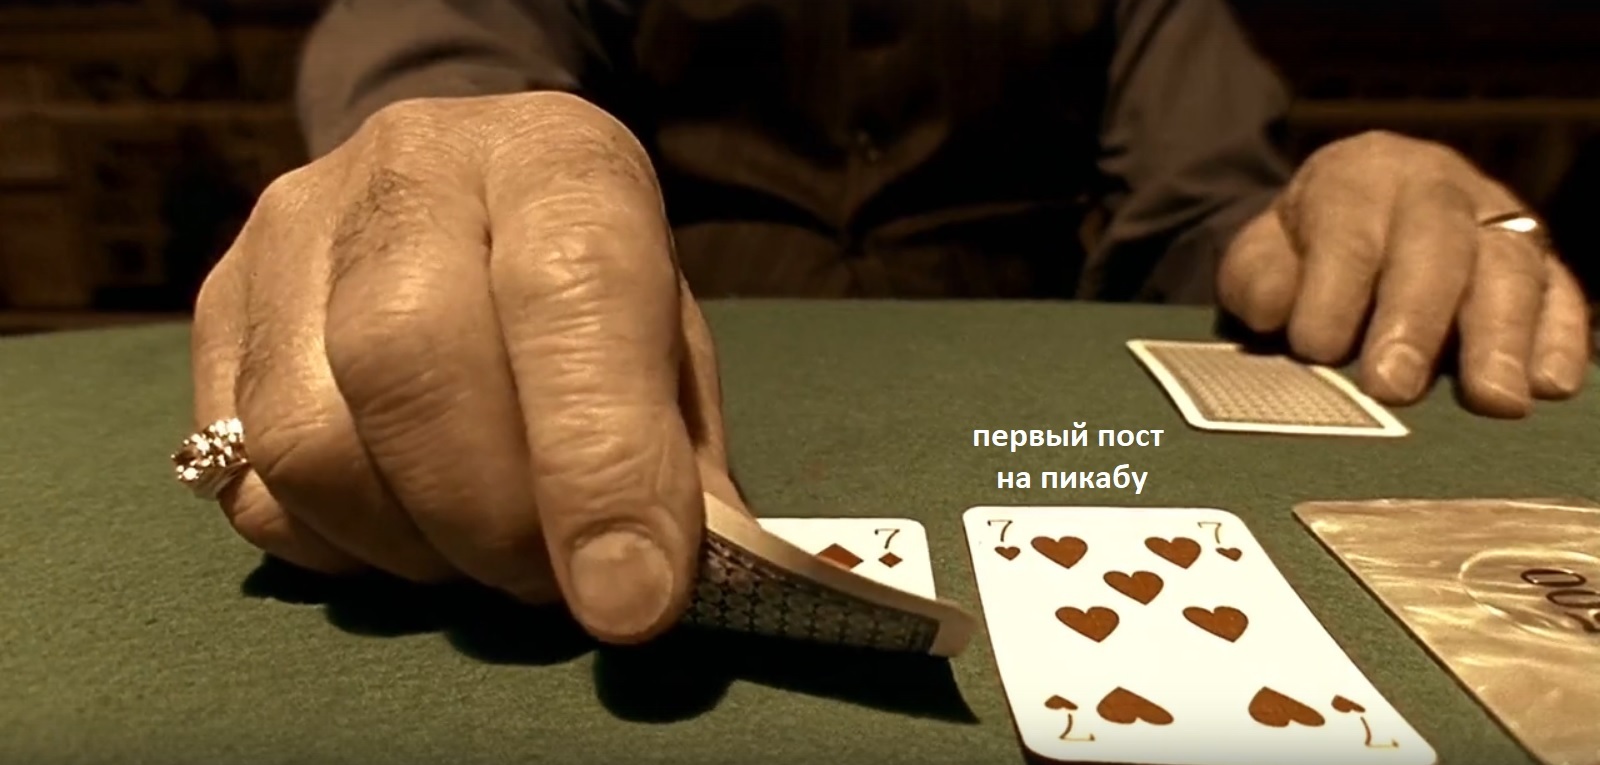 Покер деньги два ствола